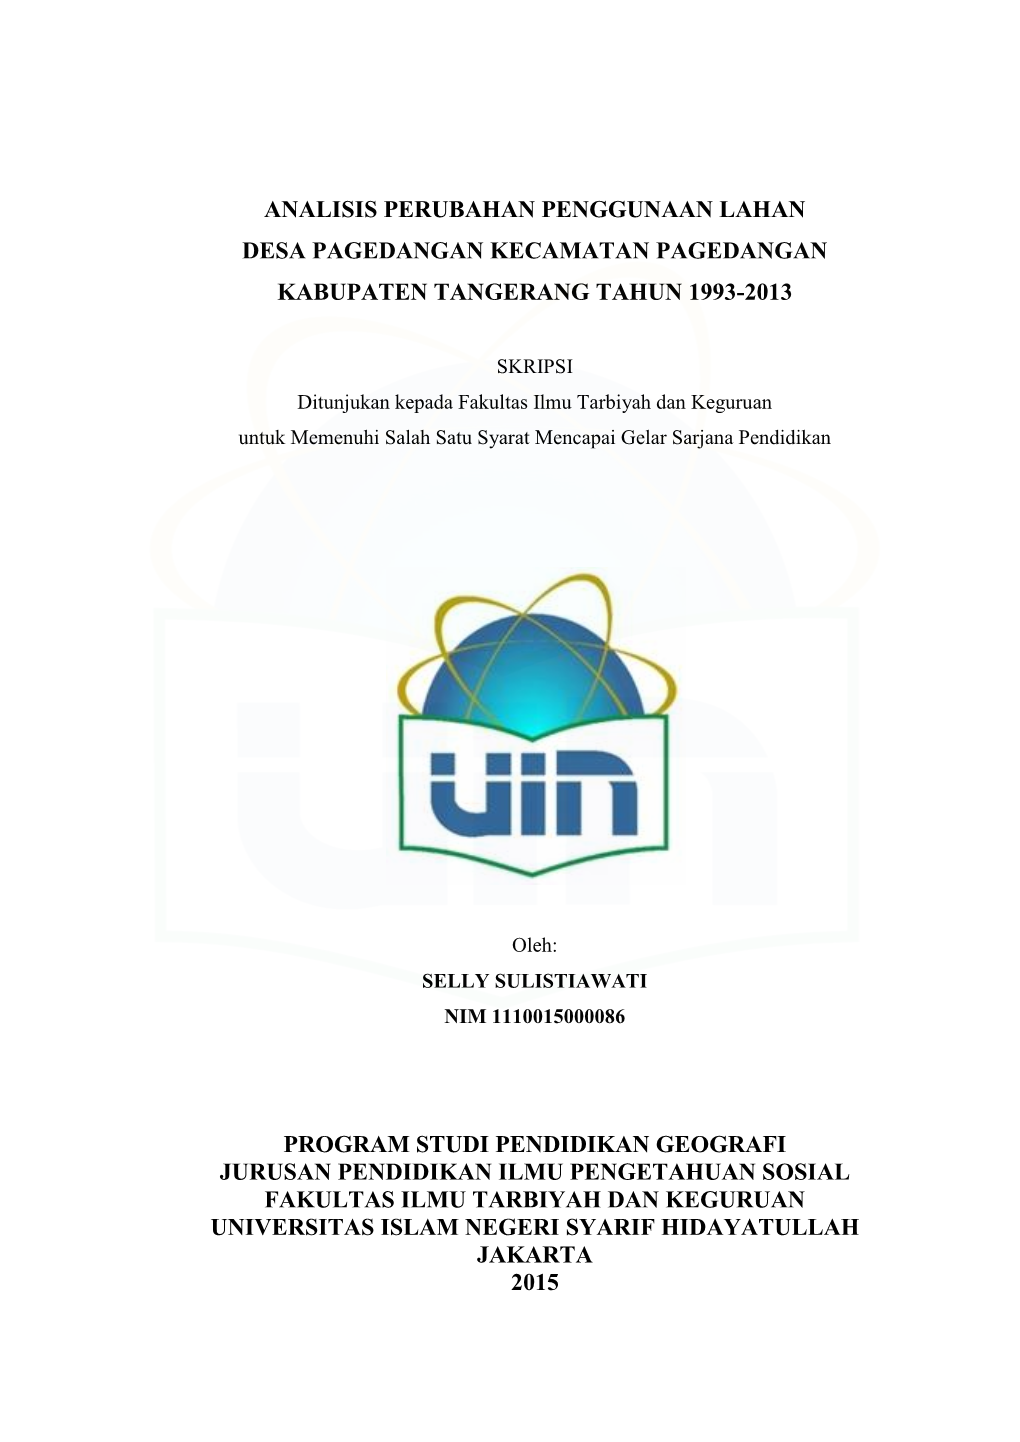 Analisis Perubahan Penggunaan Lahan Desa Pagedangan Kecamatan Pagedangan Kabupaten Tangerang Tahun 1993-2013